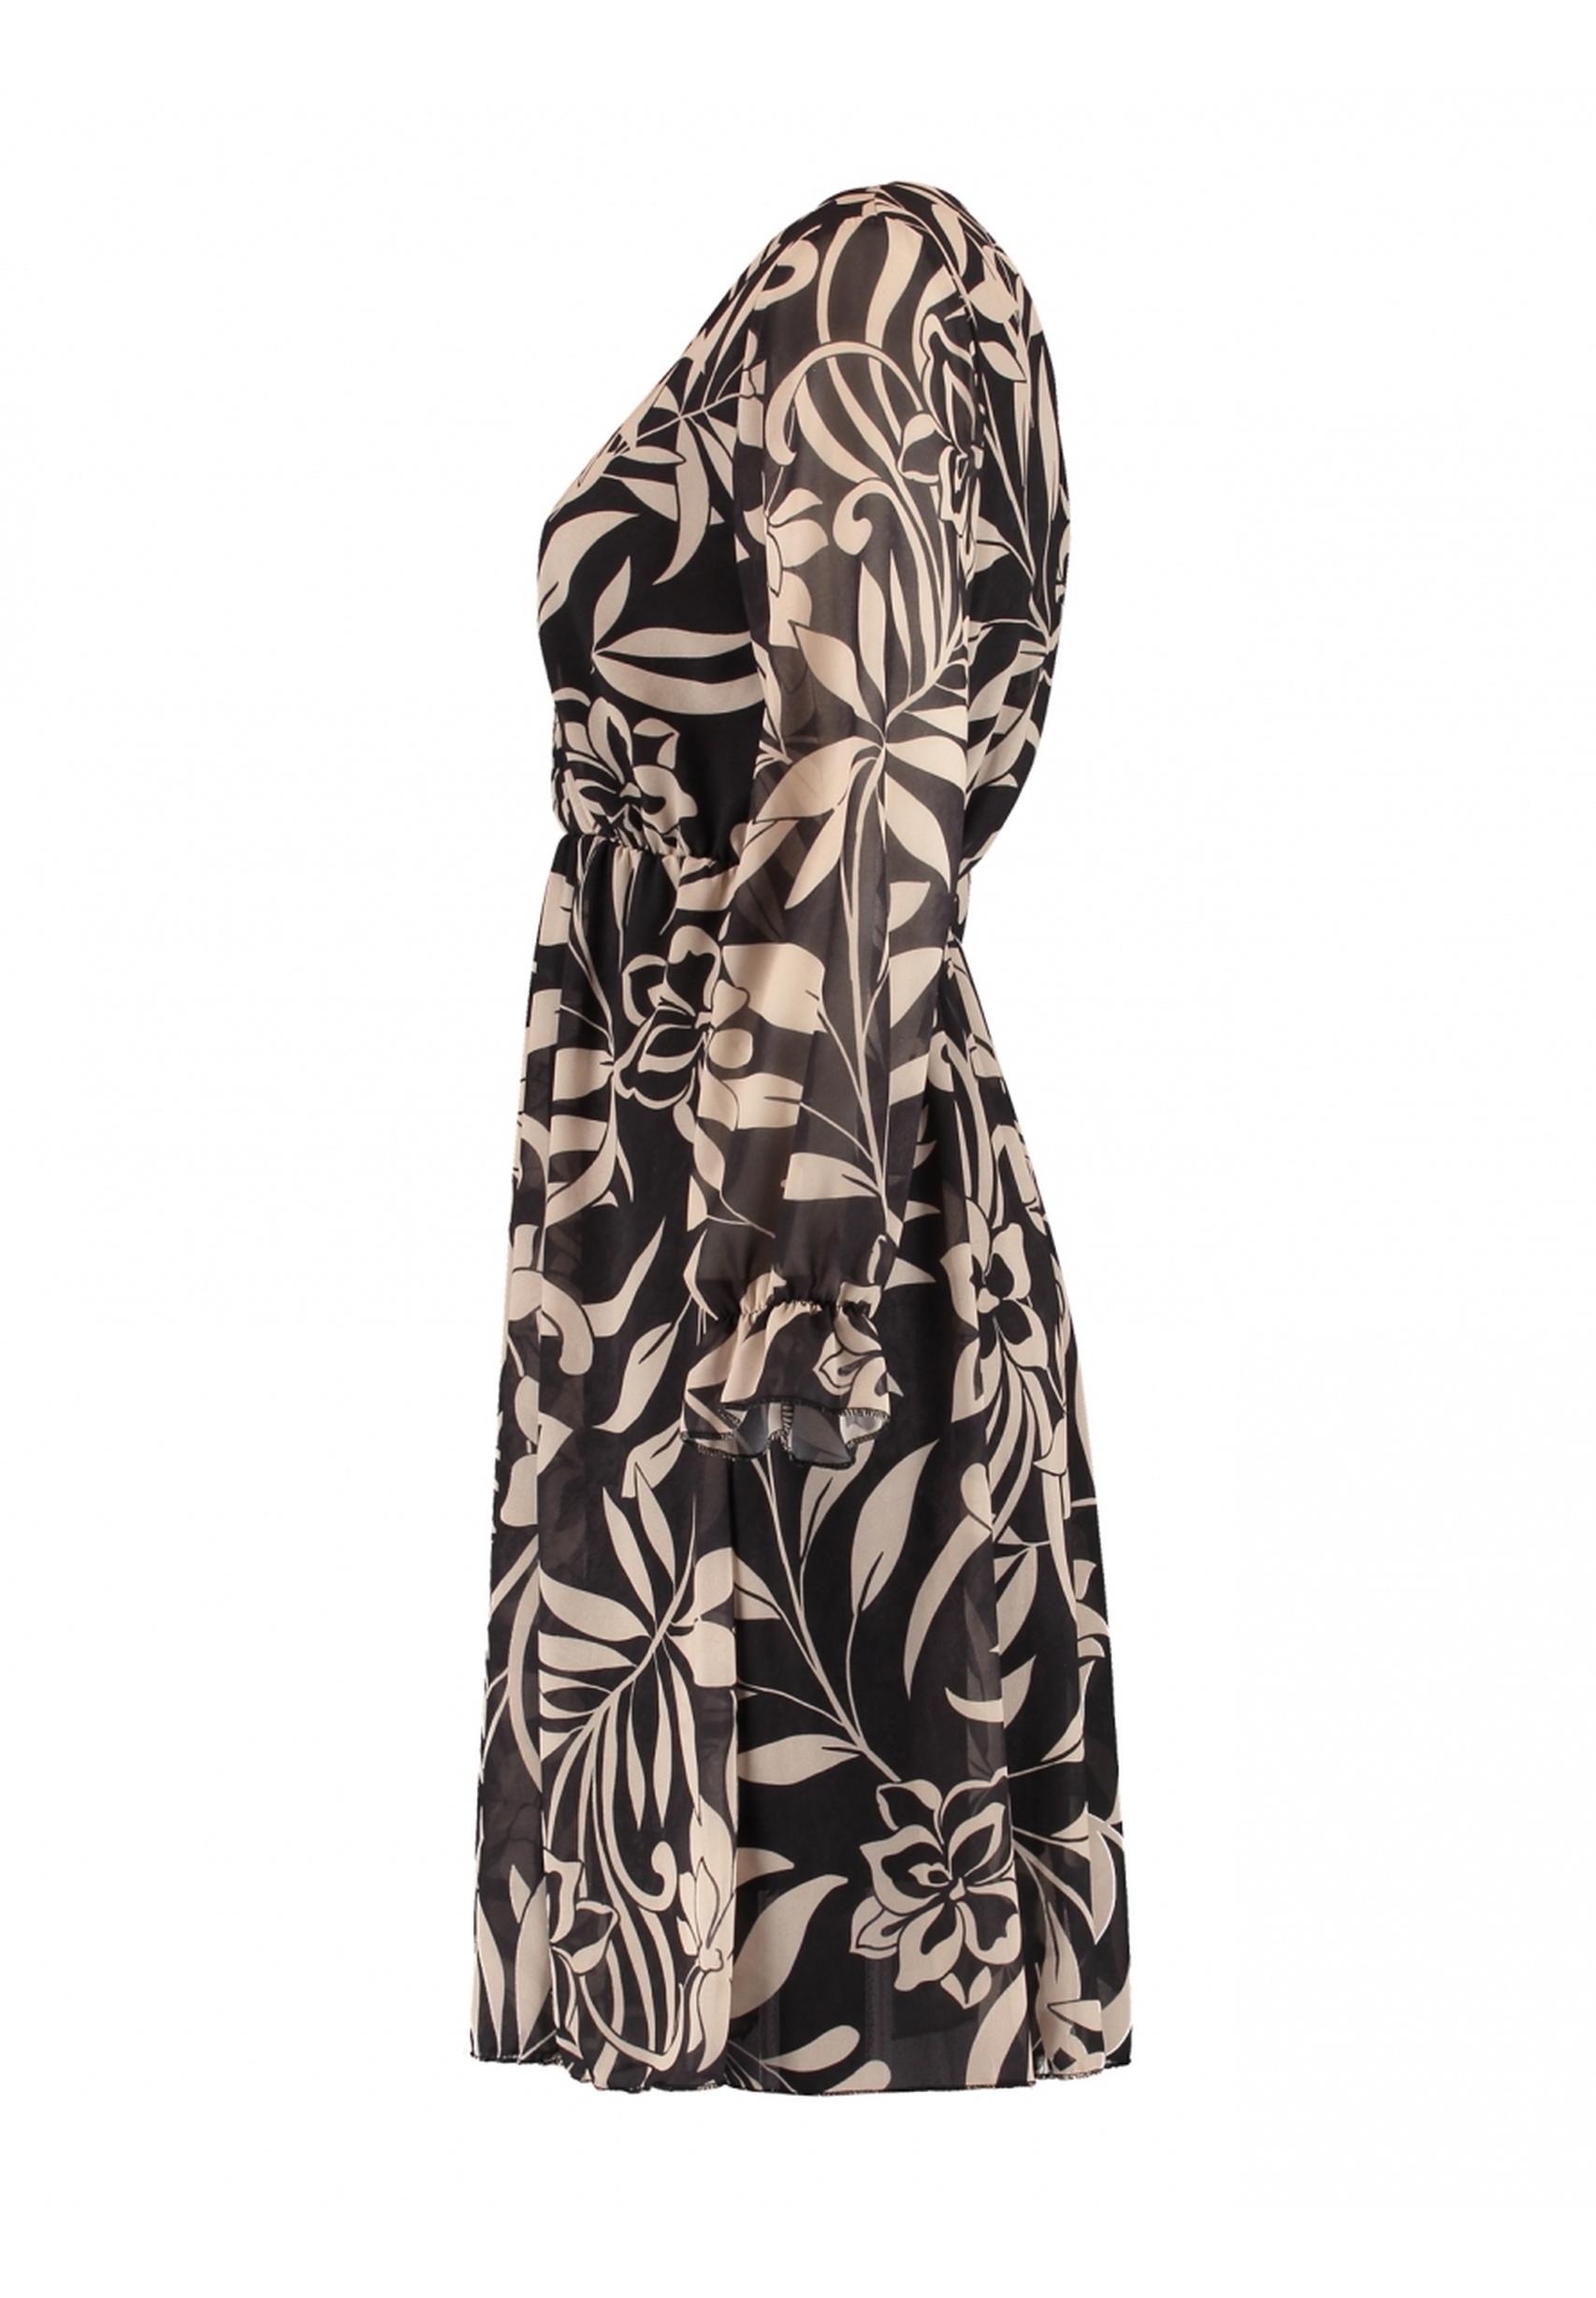 Modisches Kleid der Kollektion gemustert Zabaione aus BK-108-545 in von schwarz